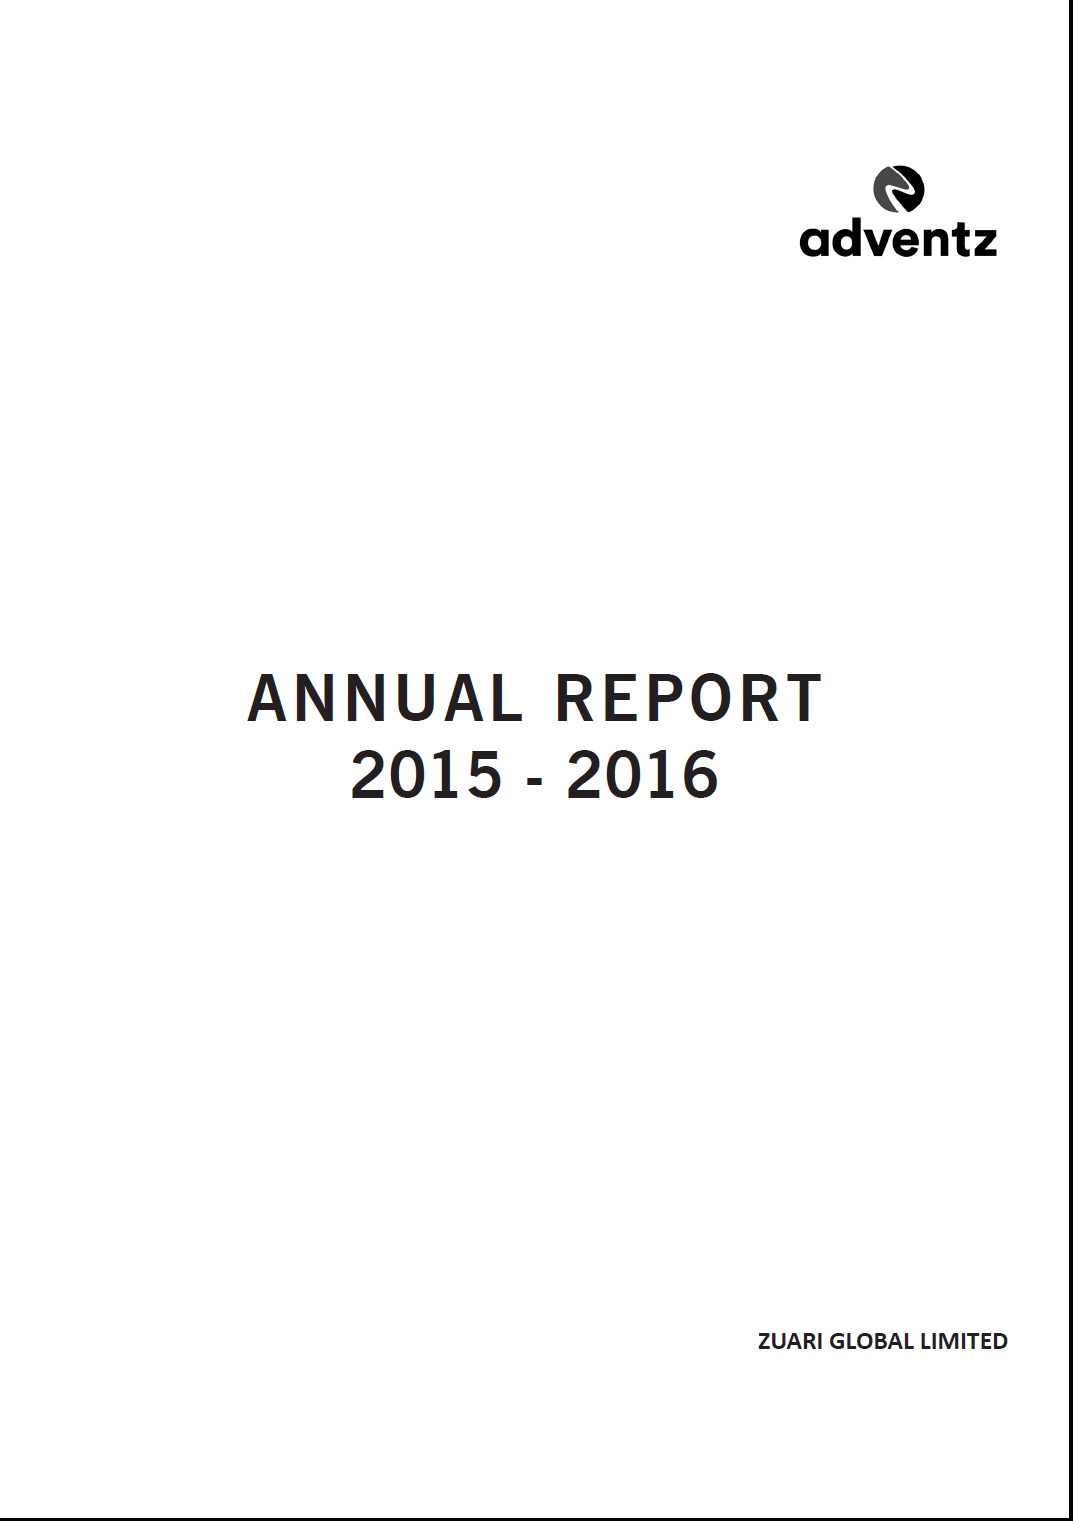 ZGL Annual Report 2015-16